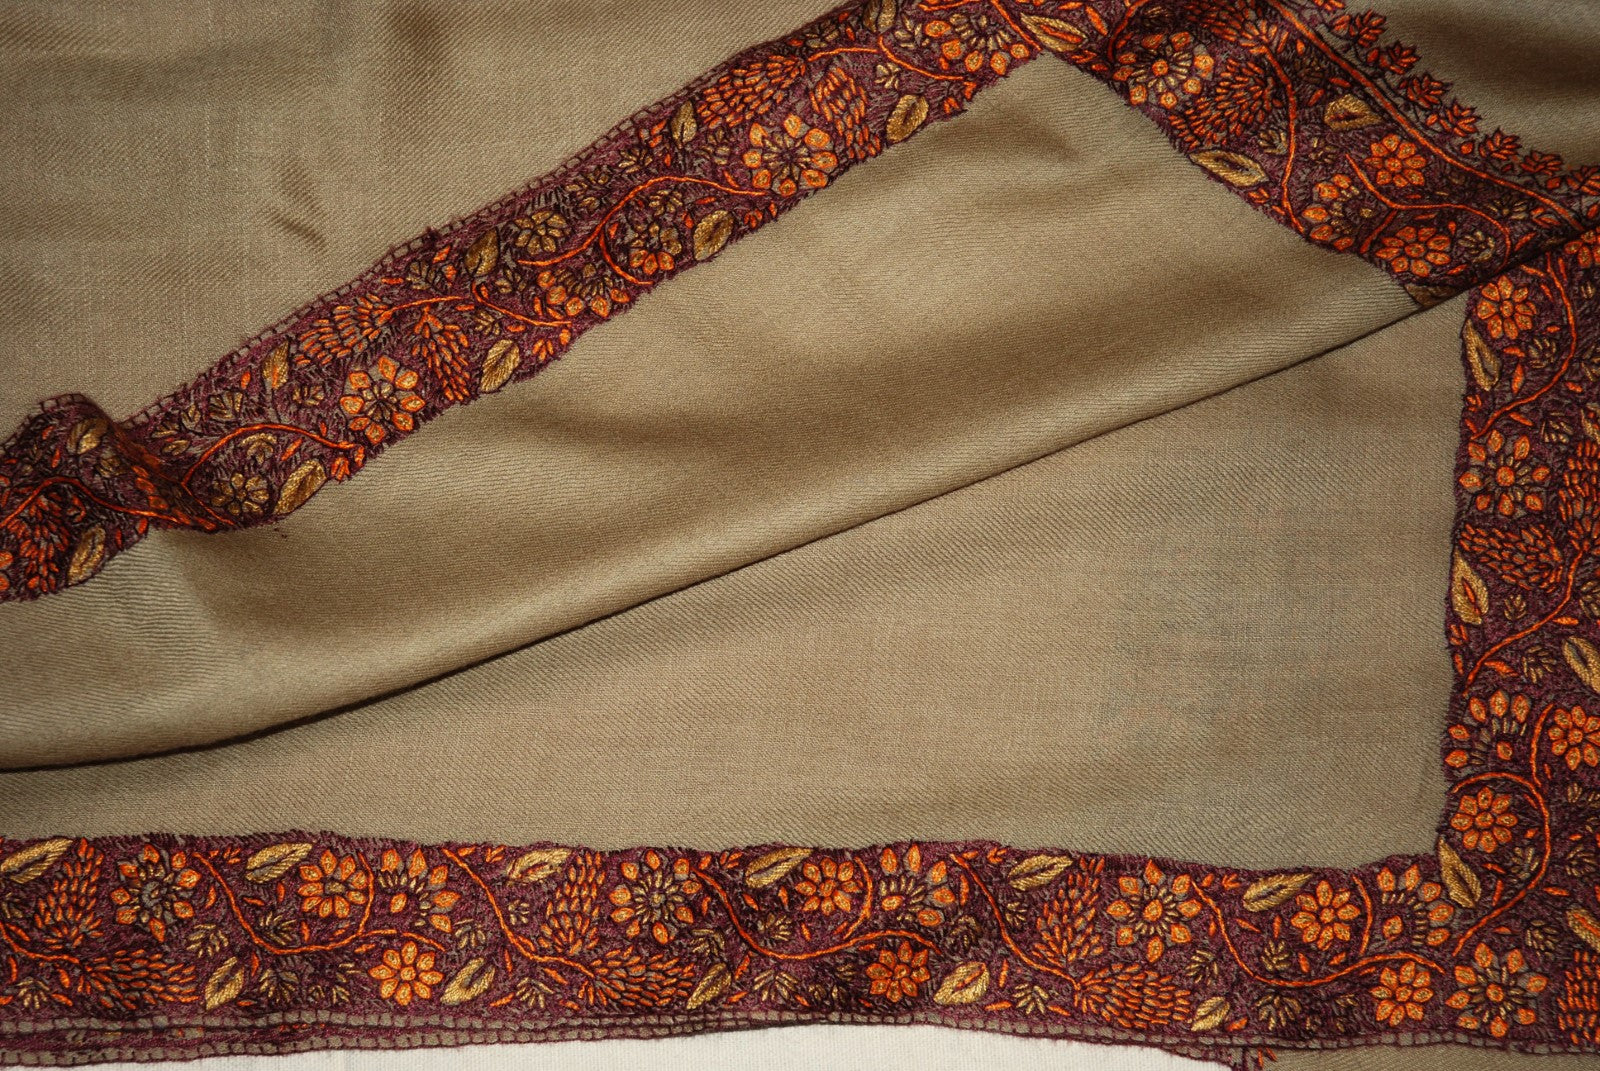 Kashmir Wool Shawl Wrap Throw Beige, Multicolor "Sozni" Embroidery #WS-503